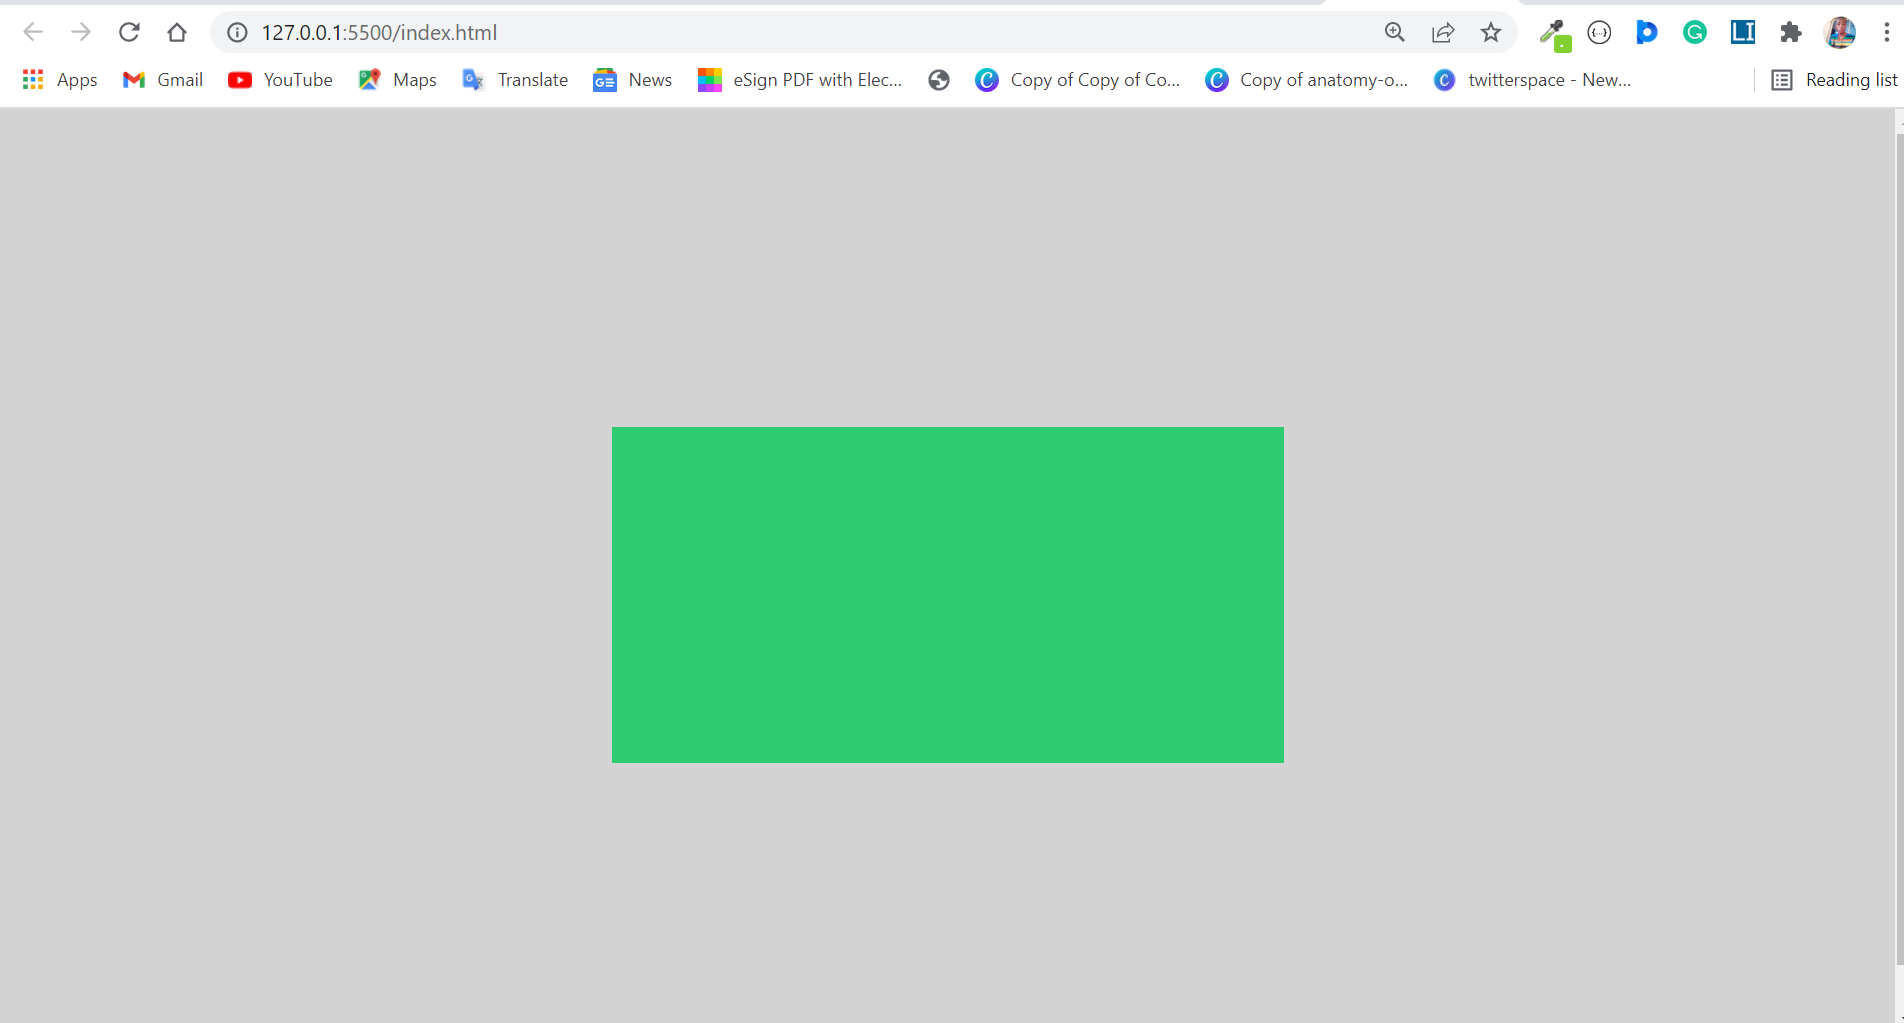 Đổi màu nền div - Hướng dẫn thay đổi màu nền bằng CSS: Bạn muốn tạo ra một trang web thu hút và chuyên nghiệp hơn? Đổi màu nền của các div trên trang web của bạn bằng CSS là giải pháp hoàn hảo. Bạn sẽ được hướng dẫn cách thay đổi màu nền một cách dễ dàng qua các bước đơn giản. Khám phá hình ảnh liên quan và bắt đầu thực hiện ngay hôm nay.